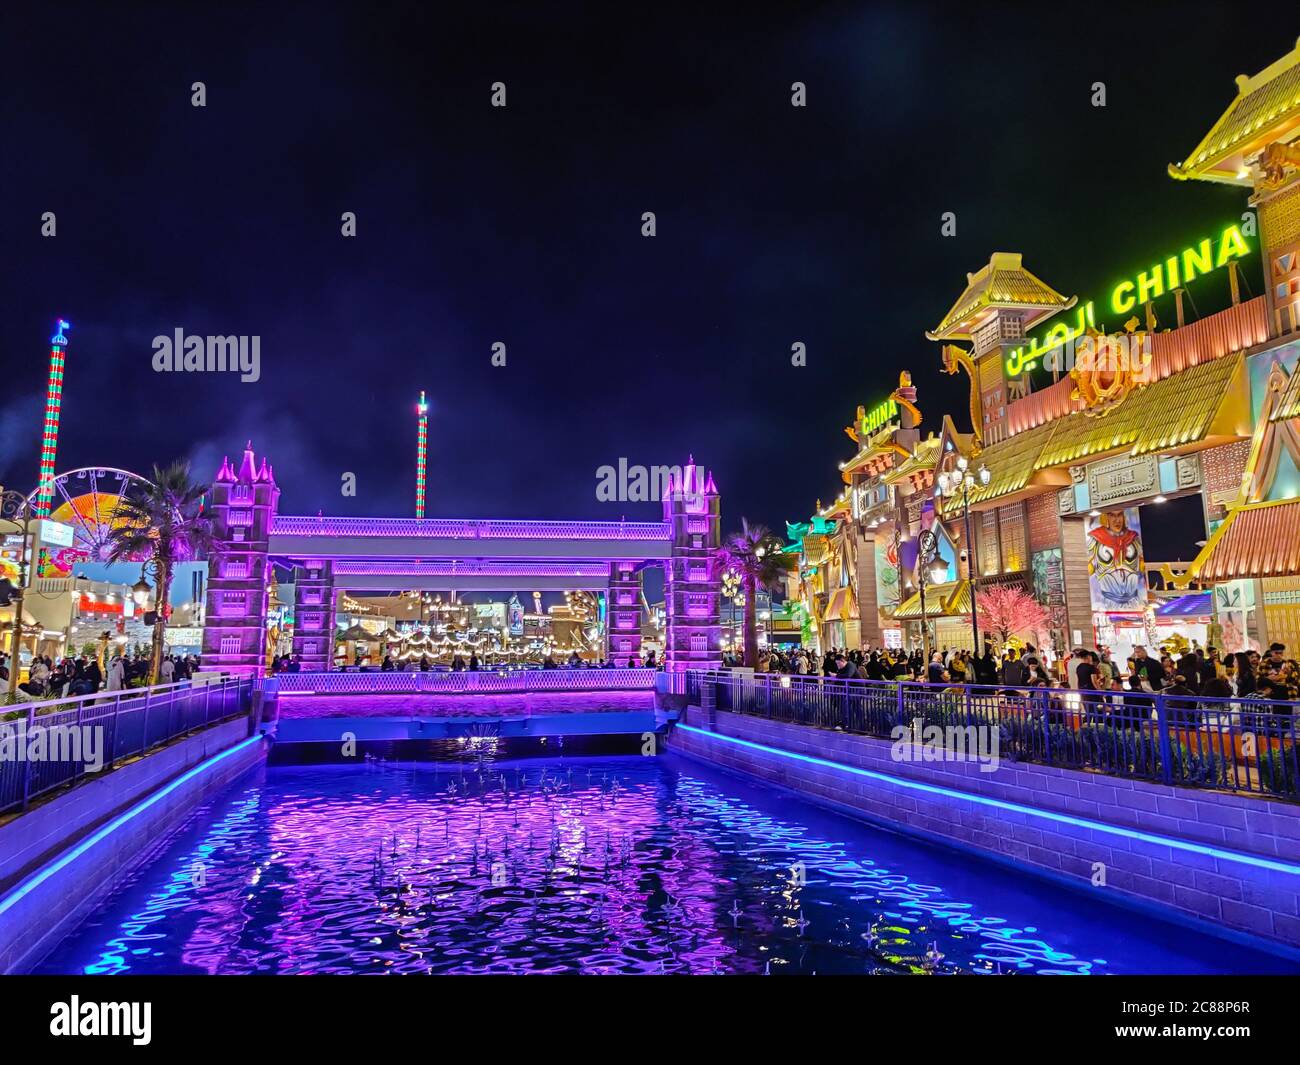 Vue colorée sur le village global de Dubaï, l'une des attractions les plus célèbres de la ville, avec ses divertissements et ses magasins issus de cultures multiples Banque D'Images